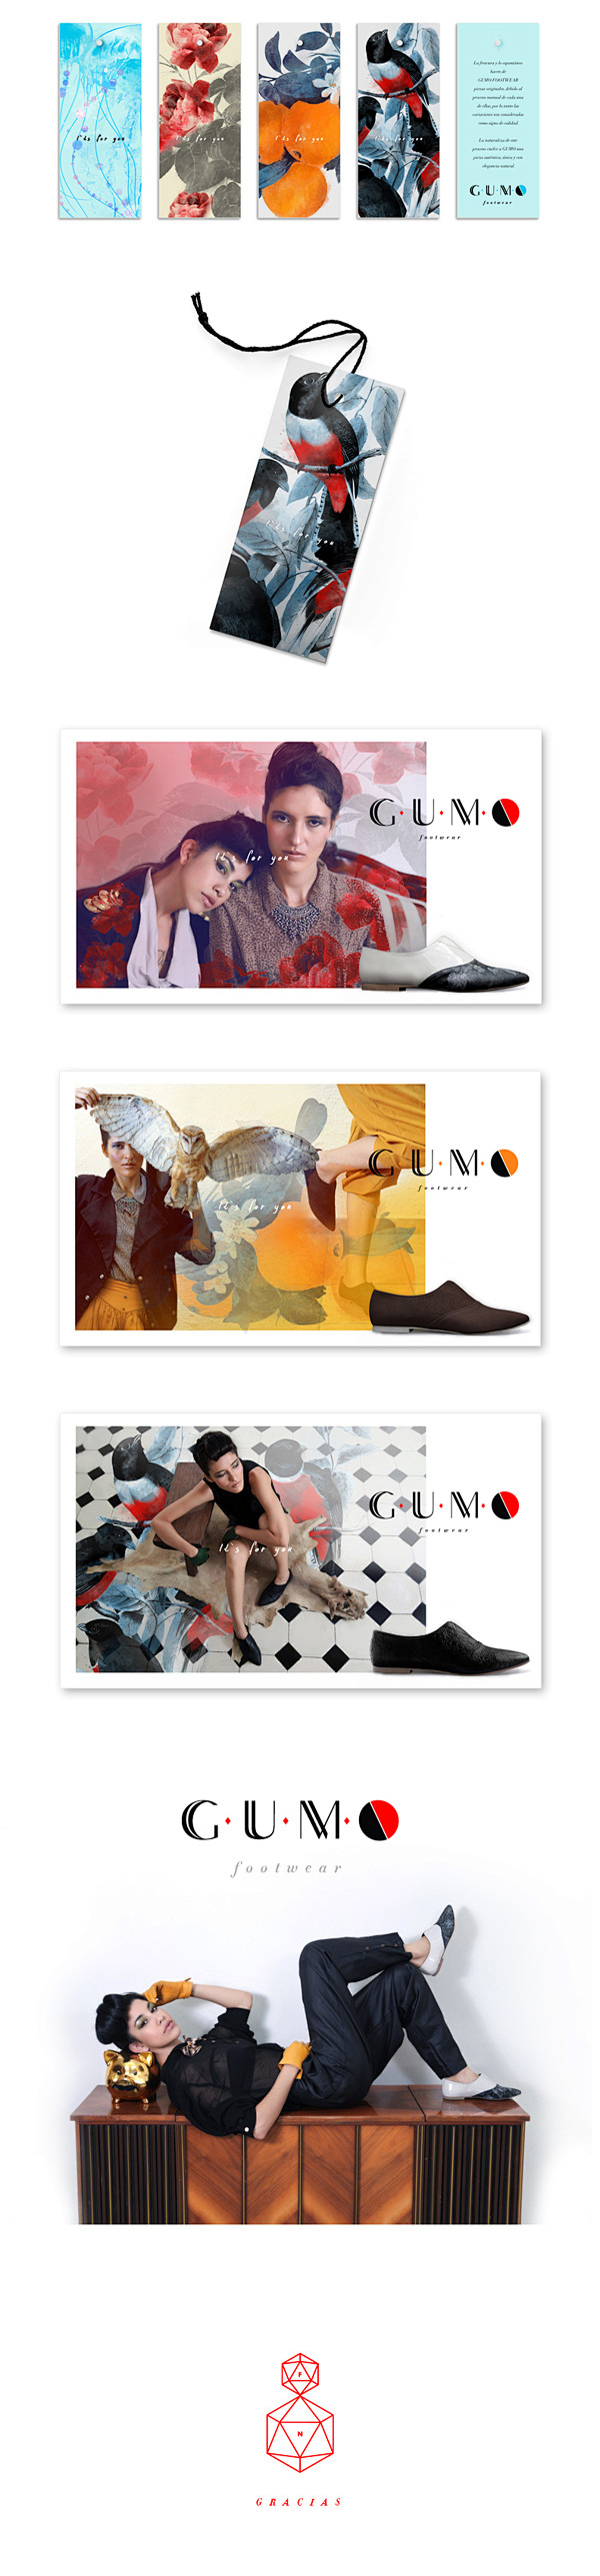 GUMO品牌形象视觉设计 设计圈 展示 ...